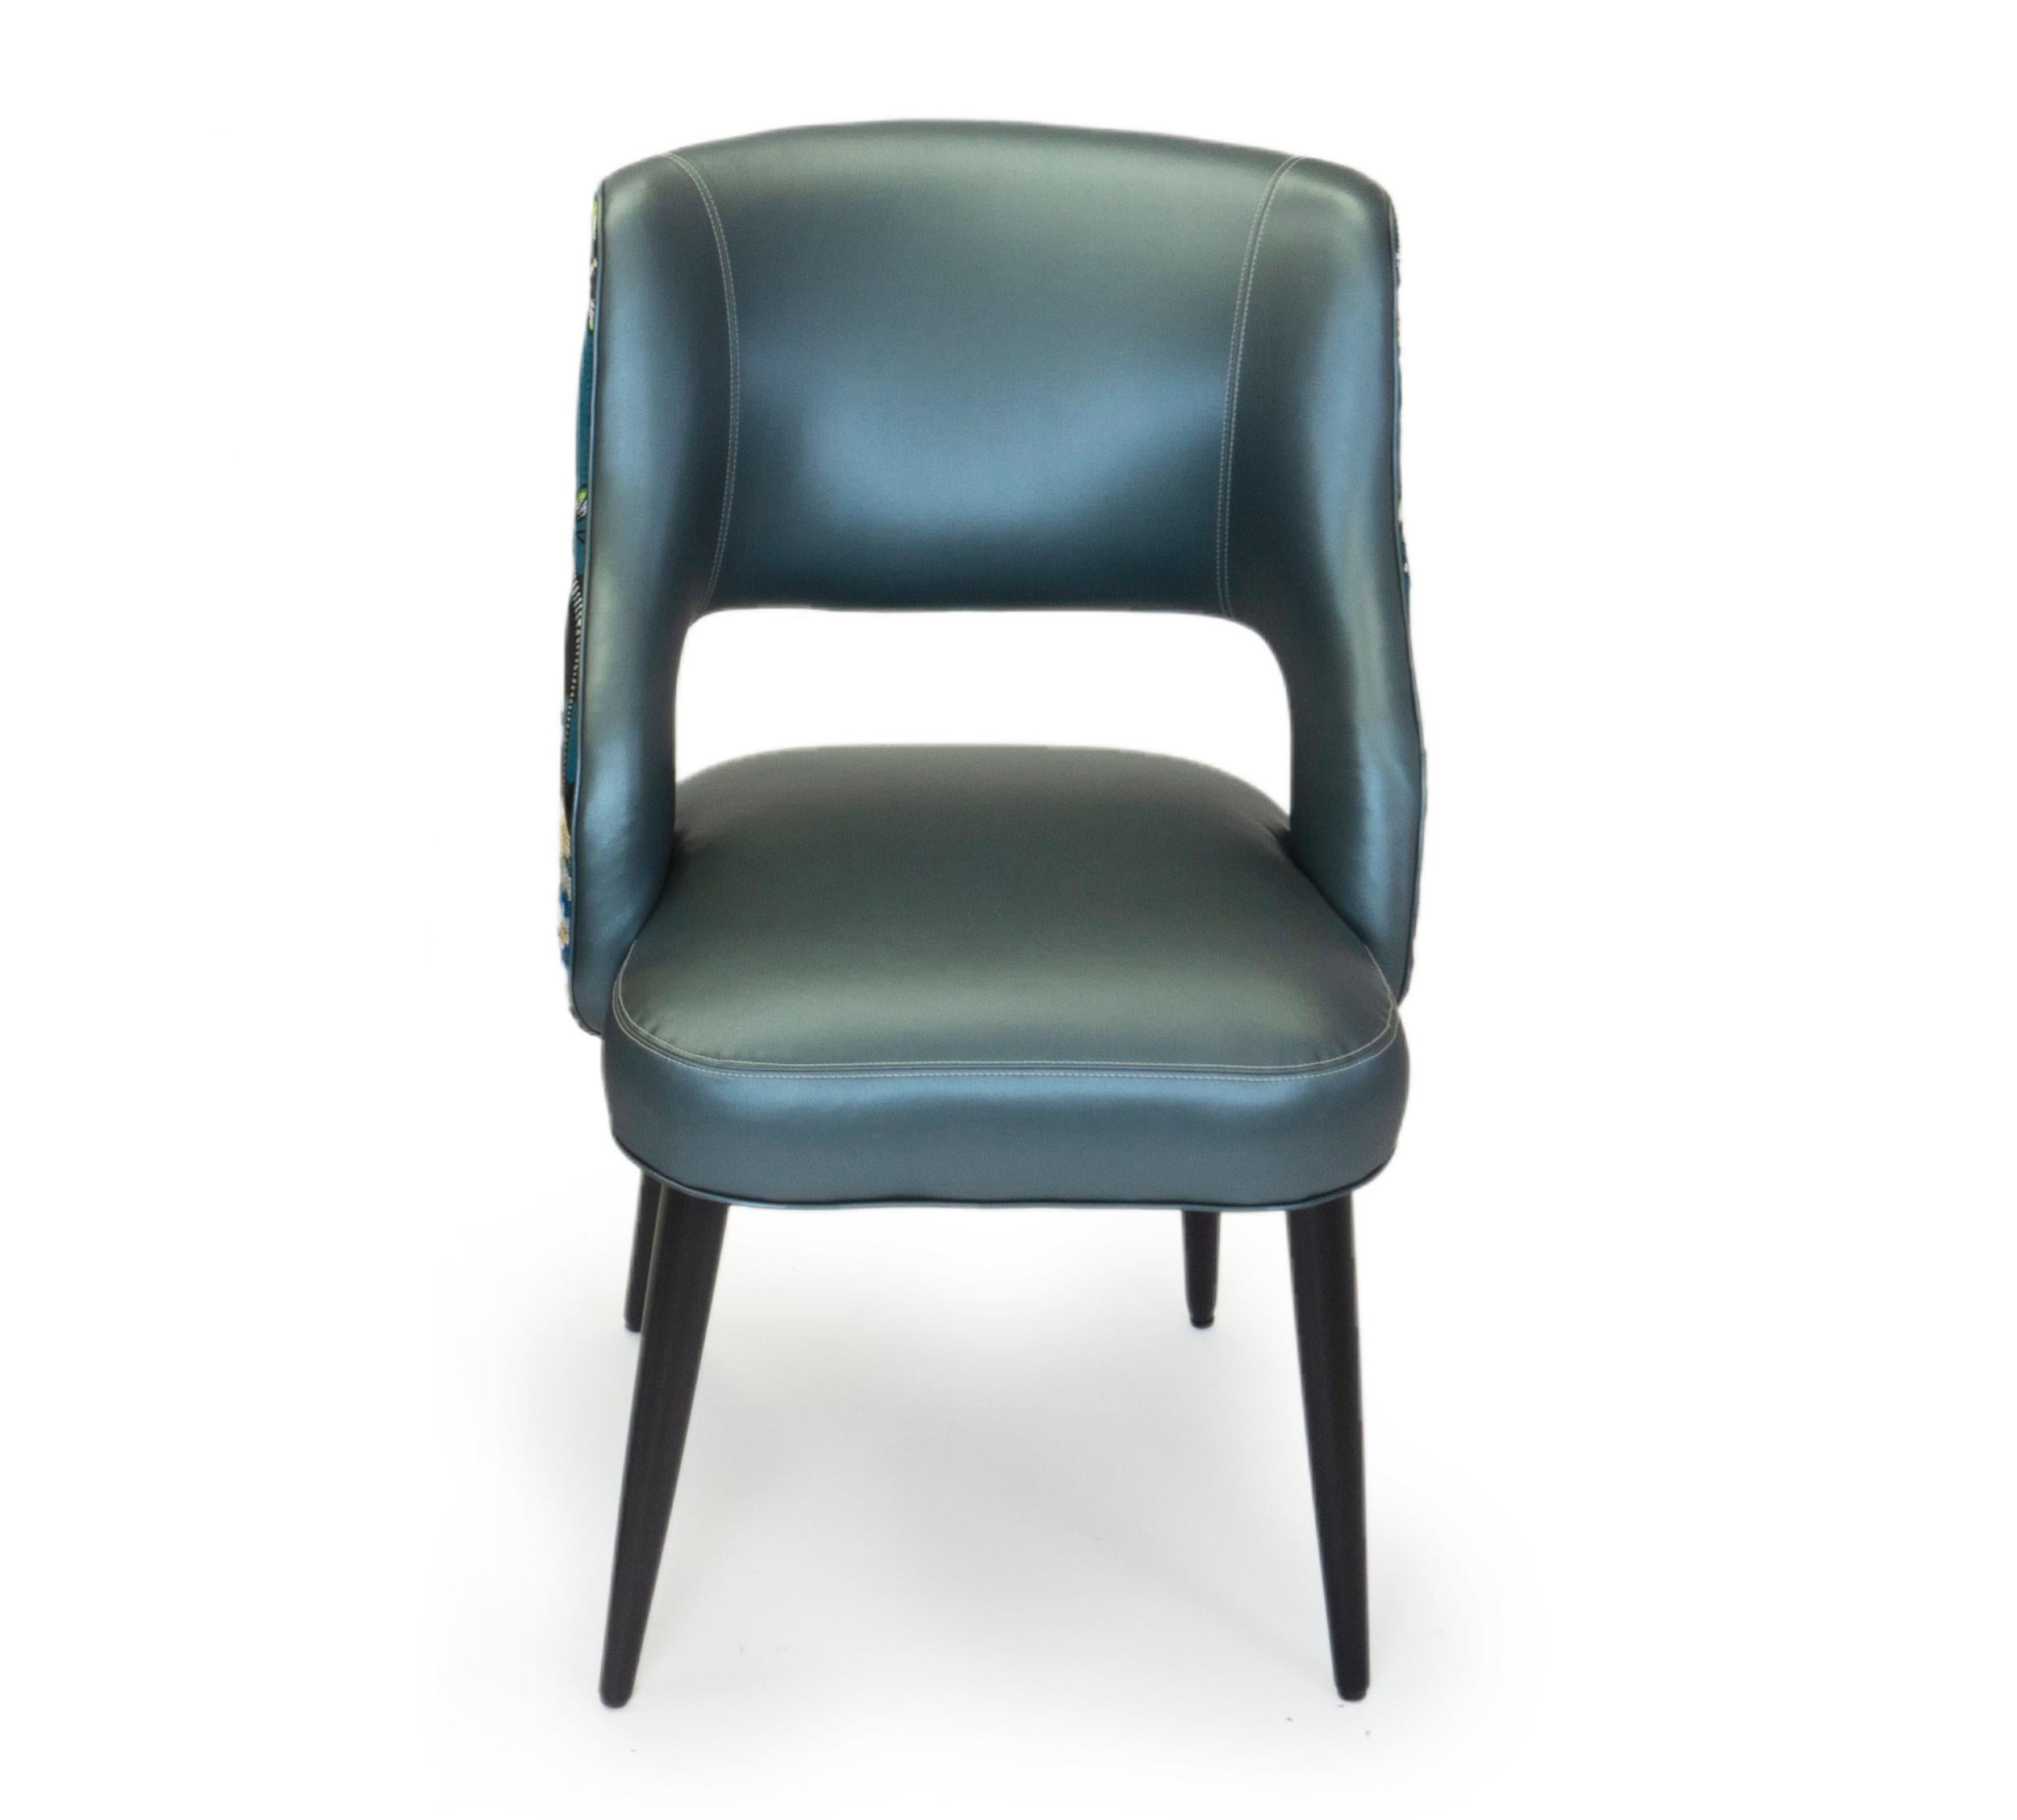 Ce nouveau design de chaise de salle à manger est confortable et moderne, avec un ton décontracté. Les chaises présentées ont une finition en noyer et sont recouvertes d'un vinyle bleu. Le dos est un tissu Christian Lacroix présentant un motif